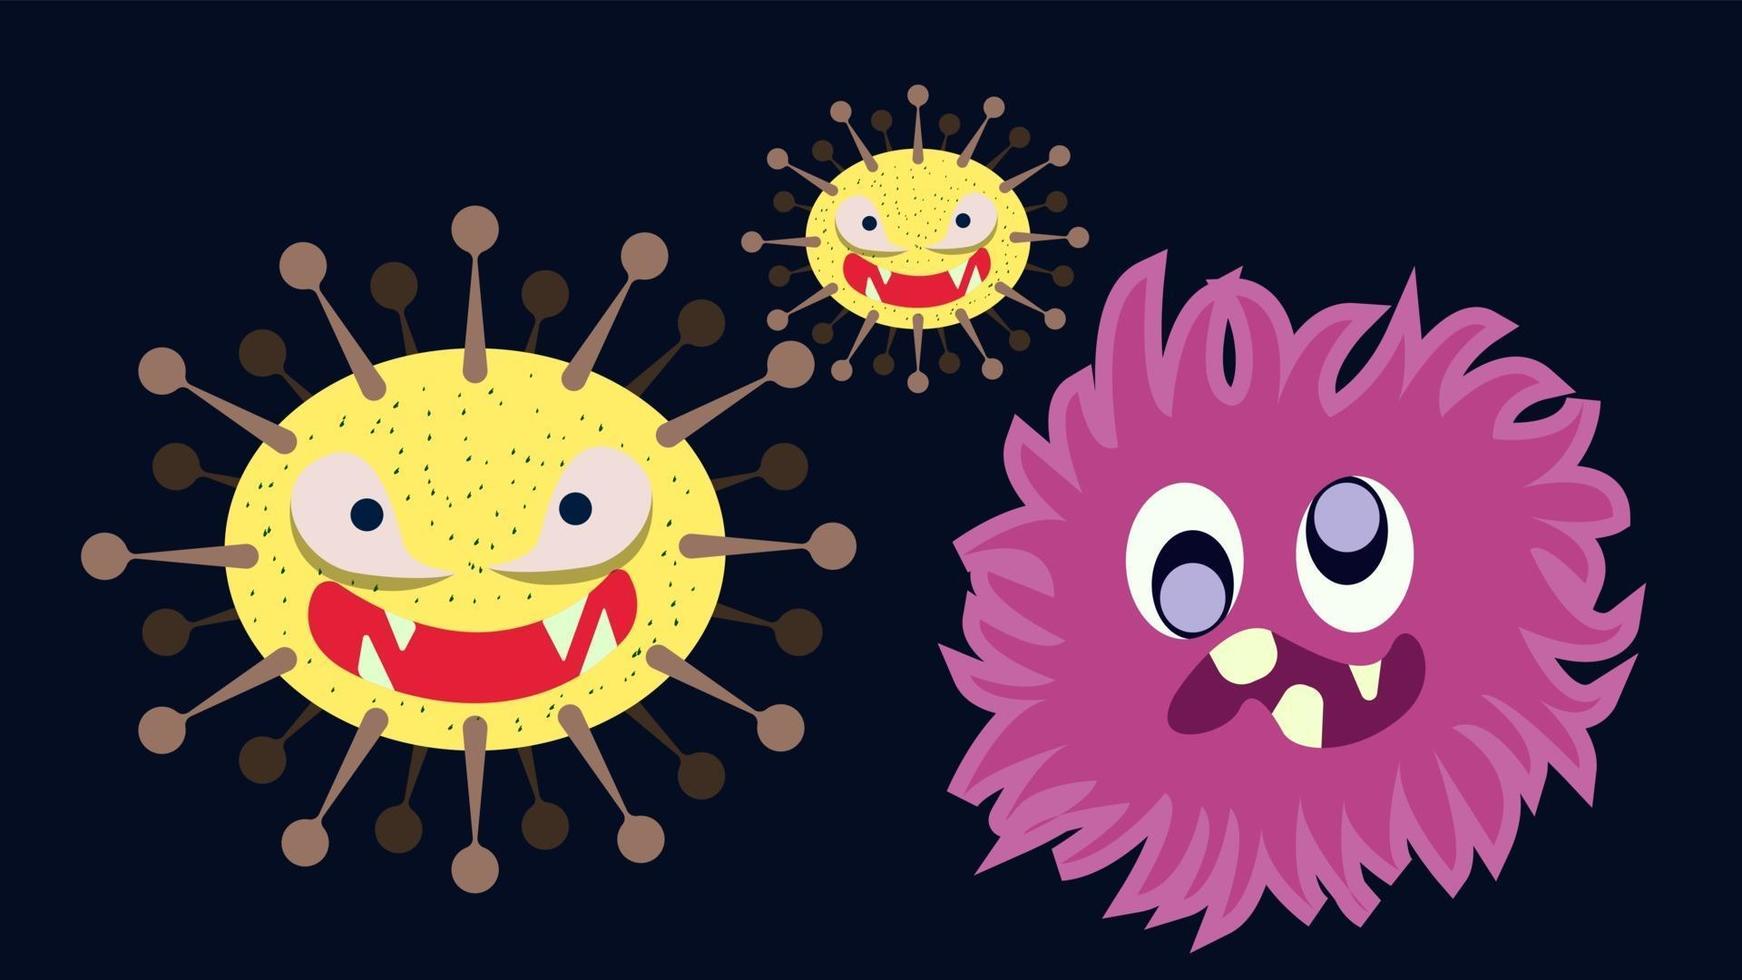 illustration vektorgrafik av söt karaktär av bakterie, bakterier och virusuppsättningssamling. mikrobe, patogen, virusikon. tecknade mikrober. söt tecknad bakterie i platt stil design. vektor eps10.